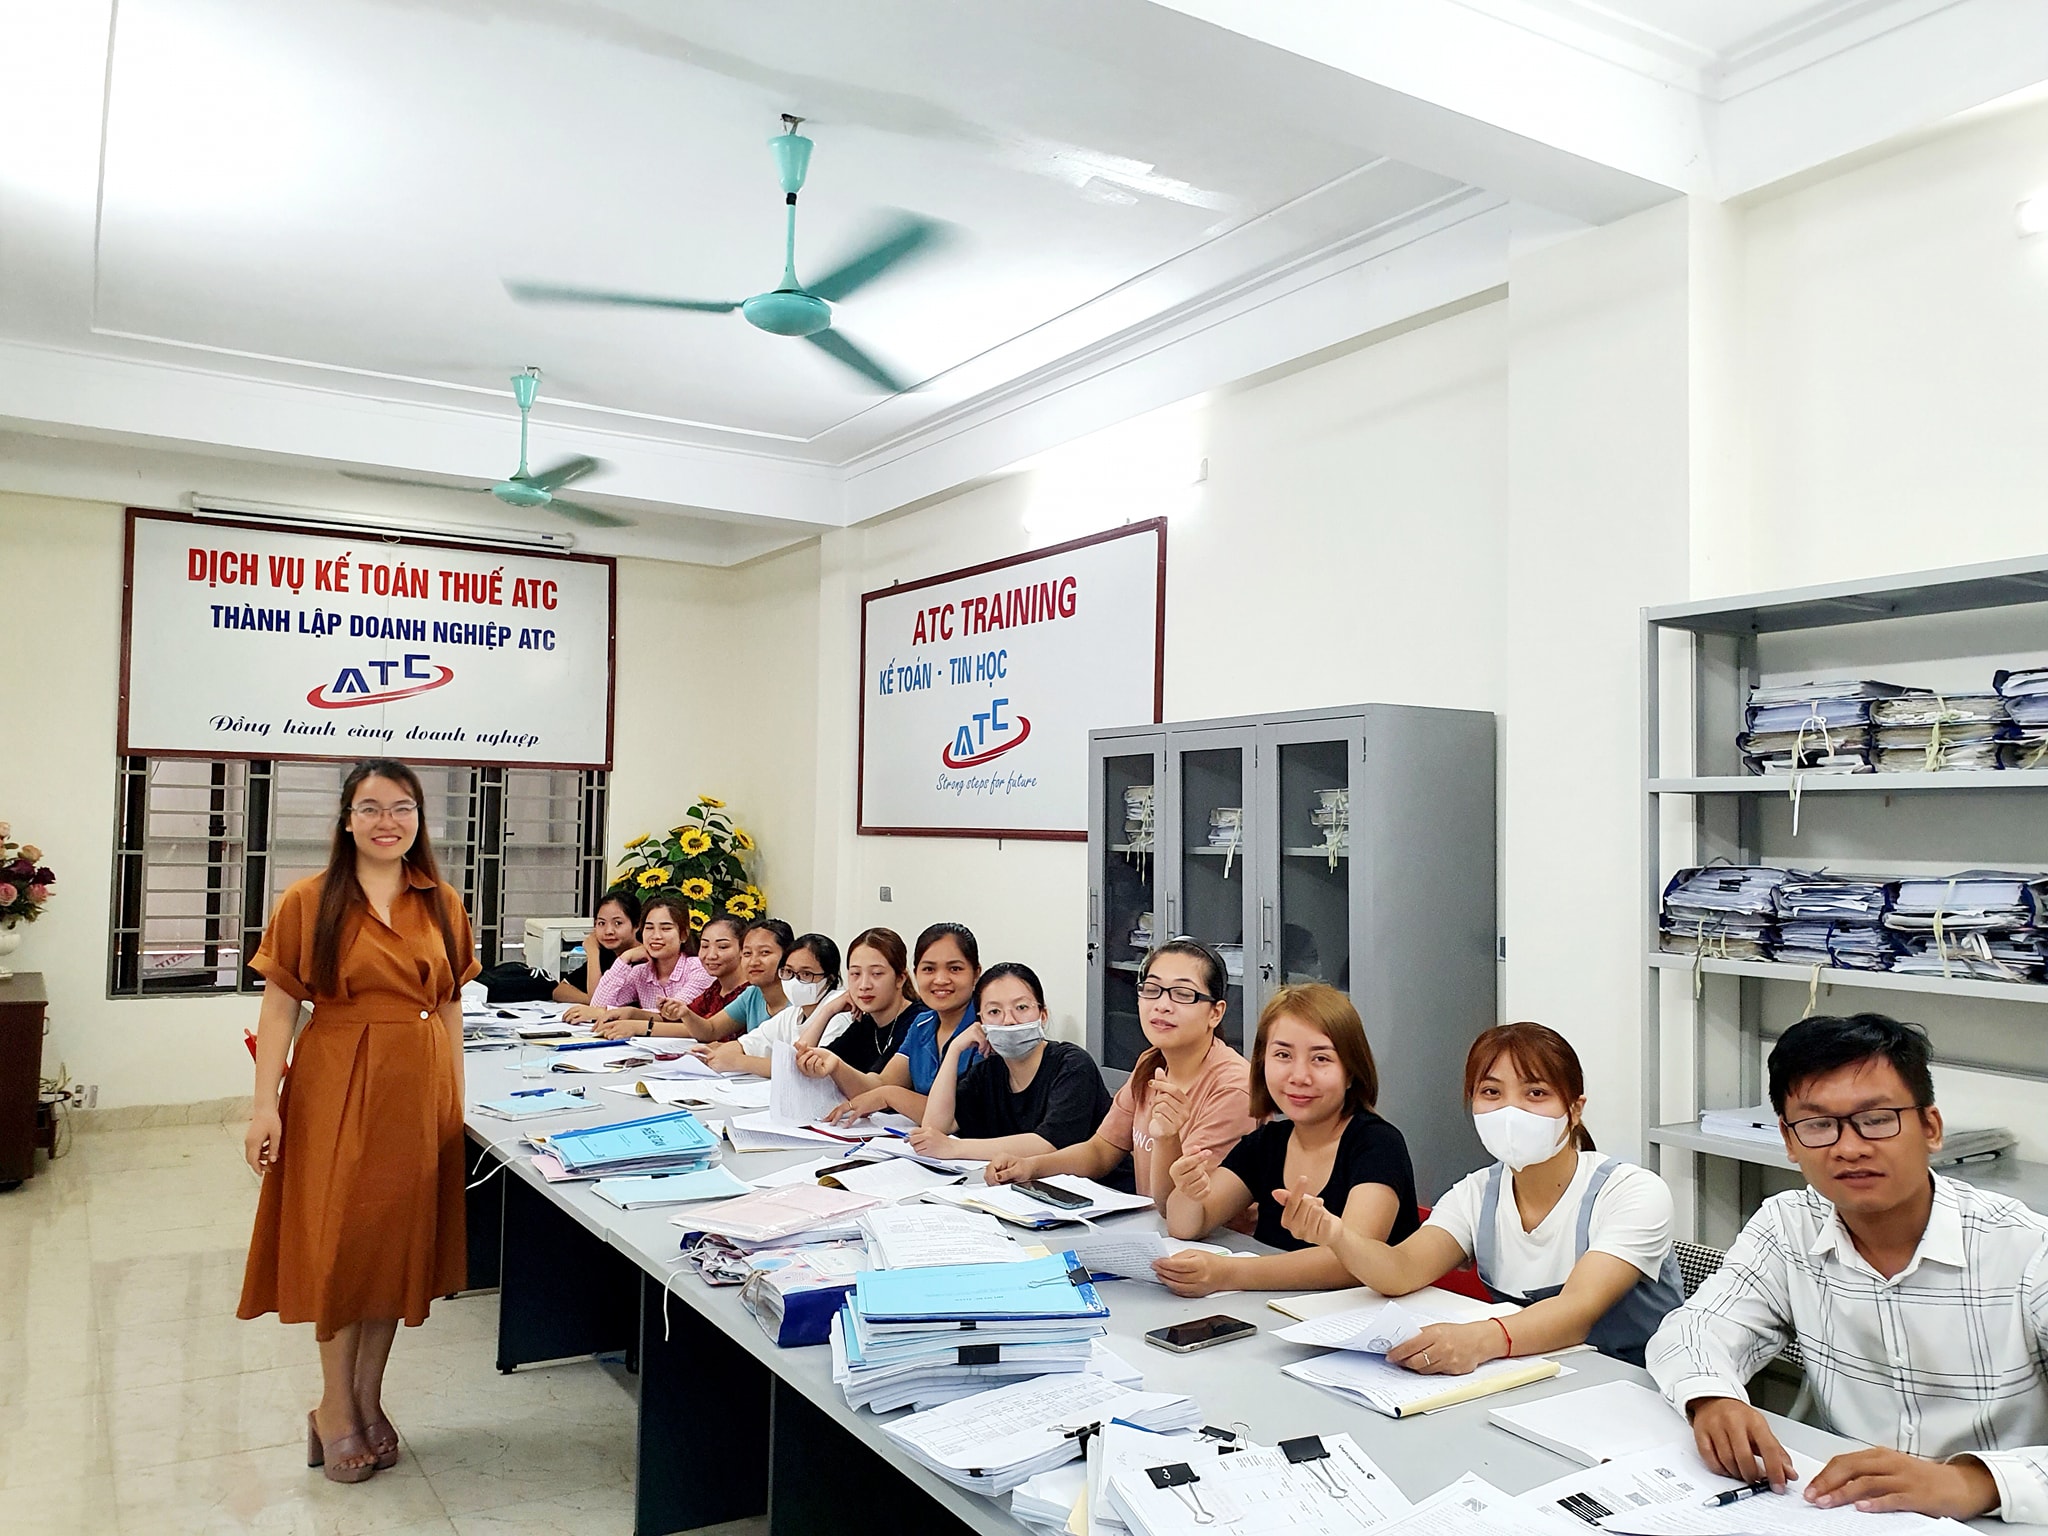 Khóa học kế toán cấp tốc tại Thanh Hóa đáp ứng được nhu cầu học kế toán thực tế ở Thanh Hóa của đông đảo học viên từ khắp các huyện thị 